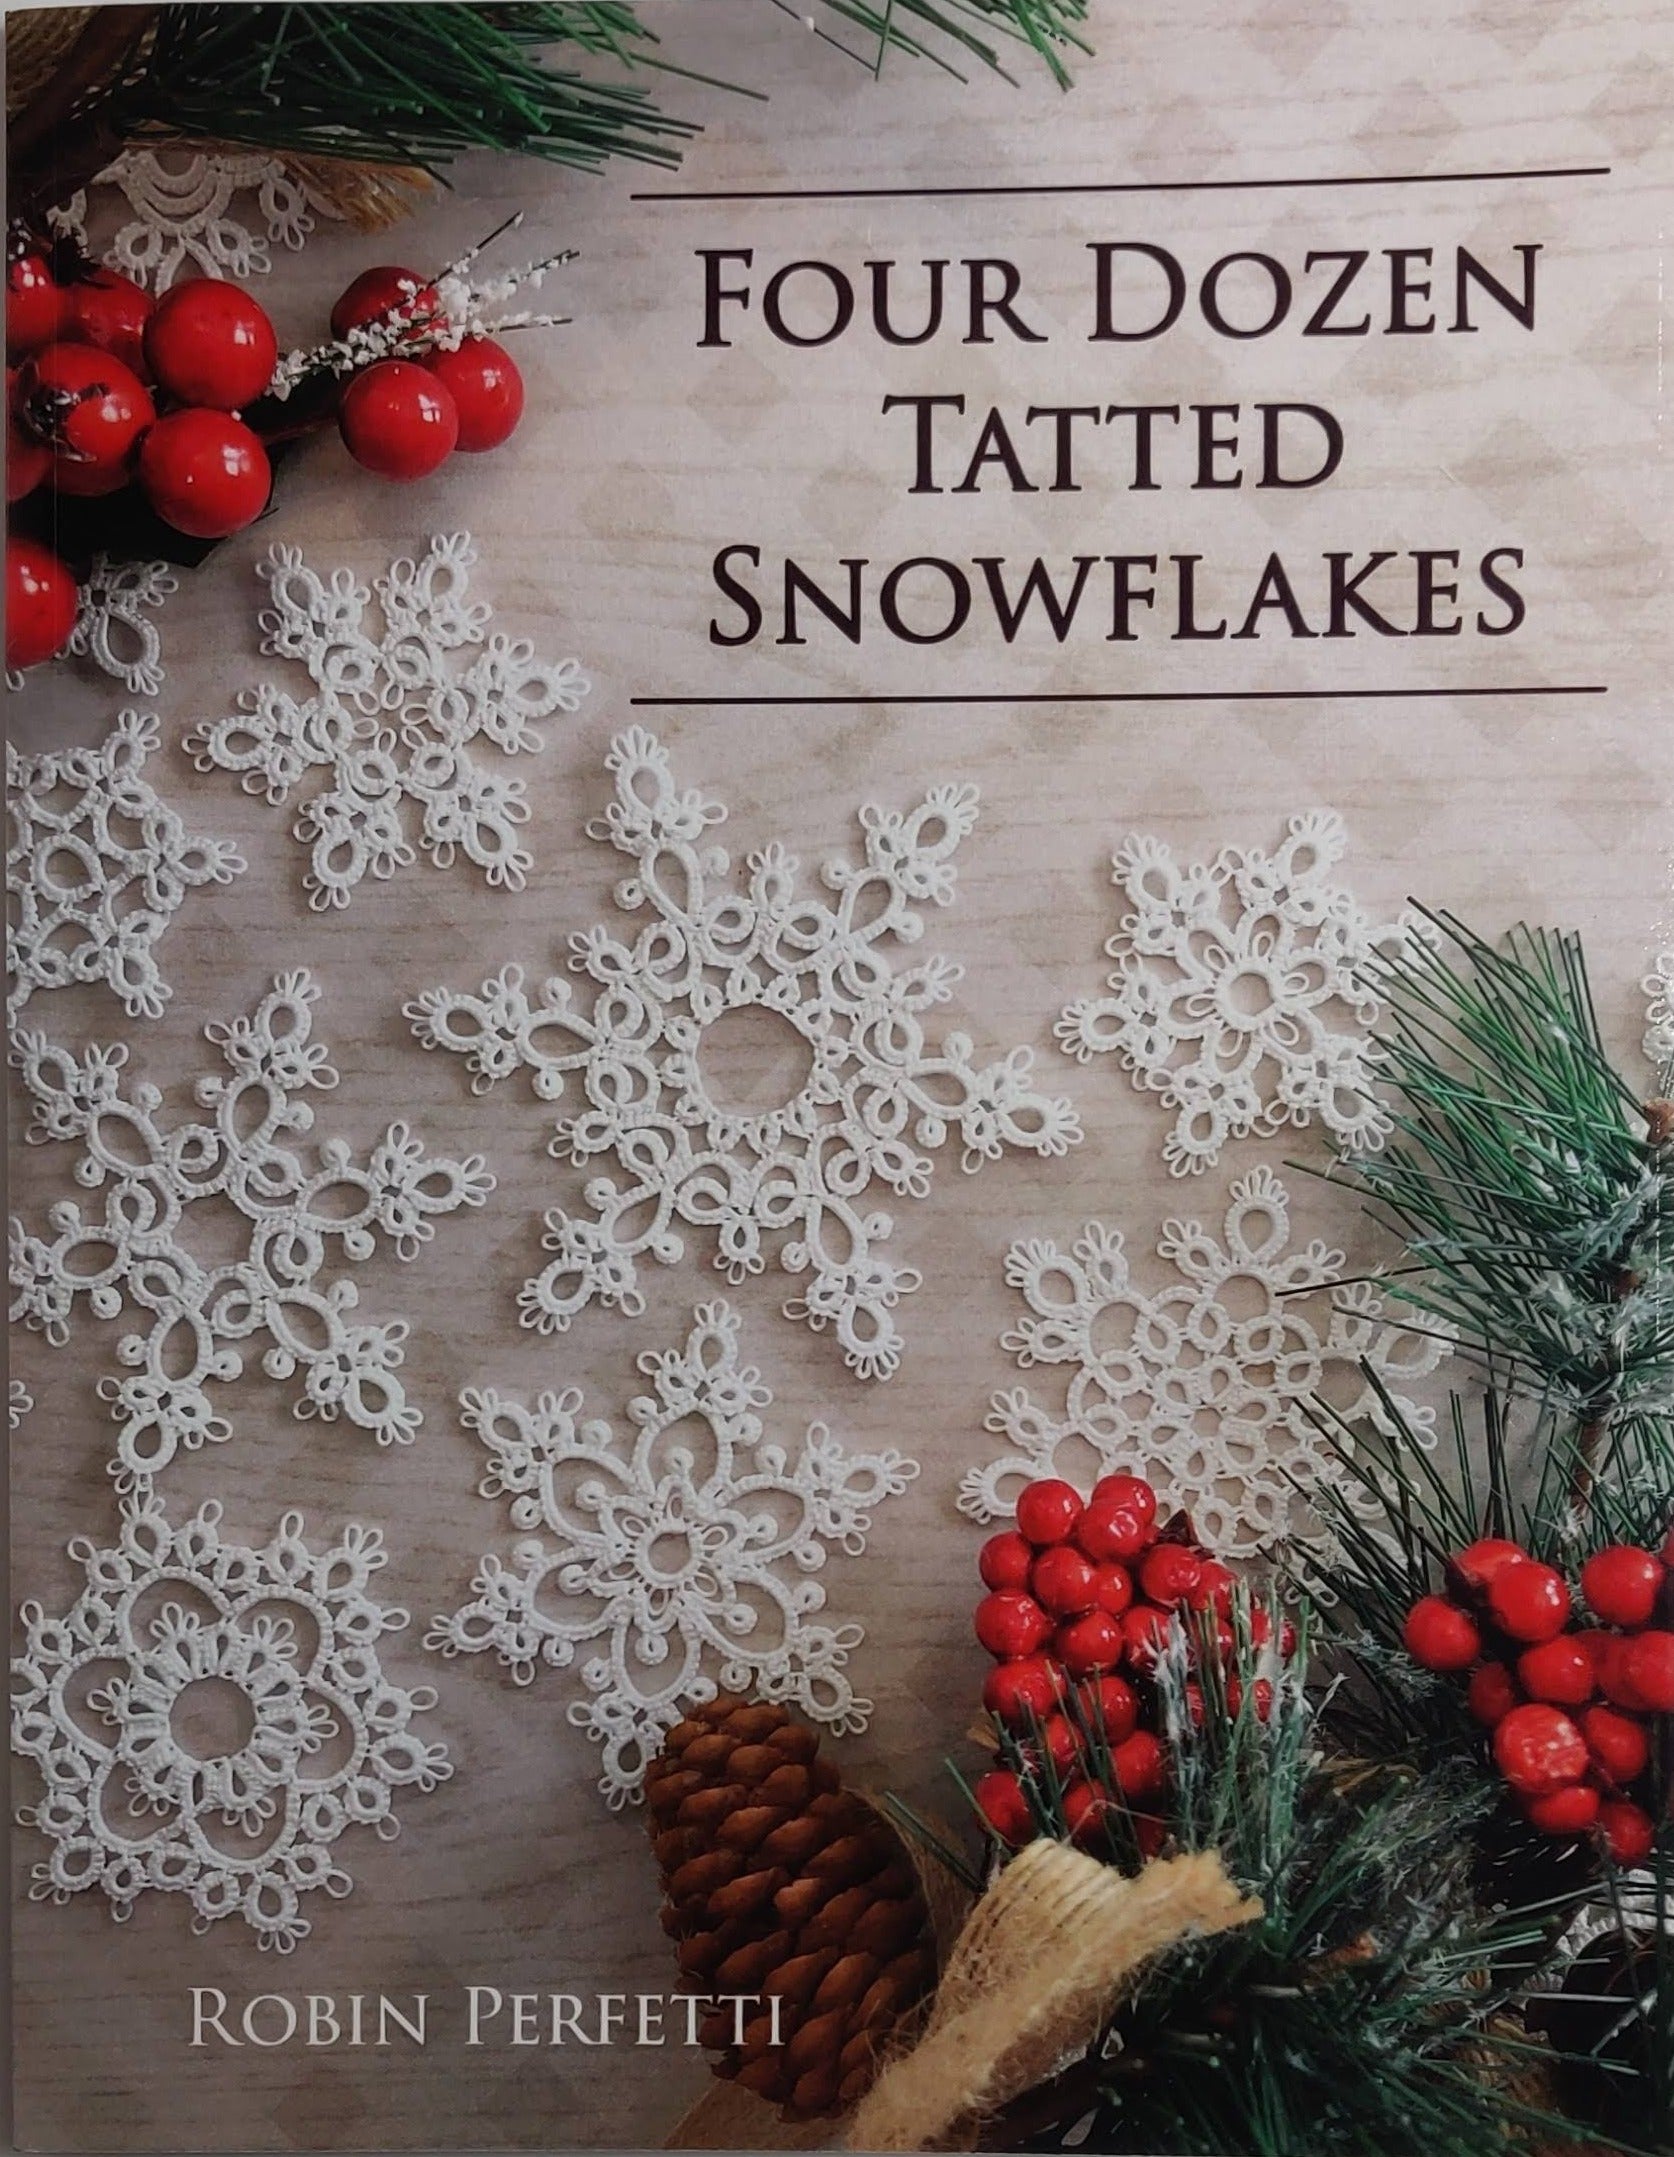 Four dozen tatted snowflakes